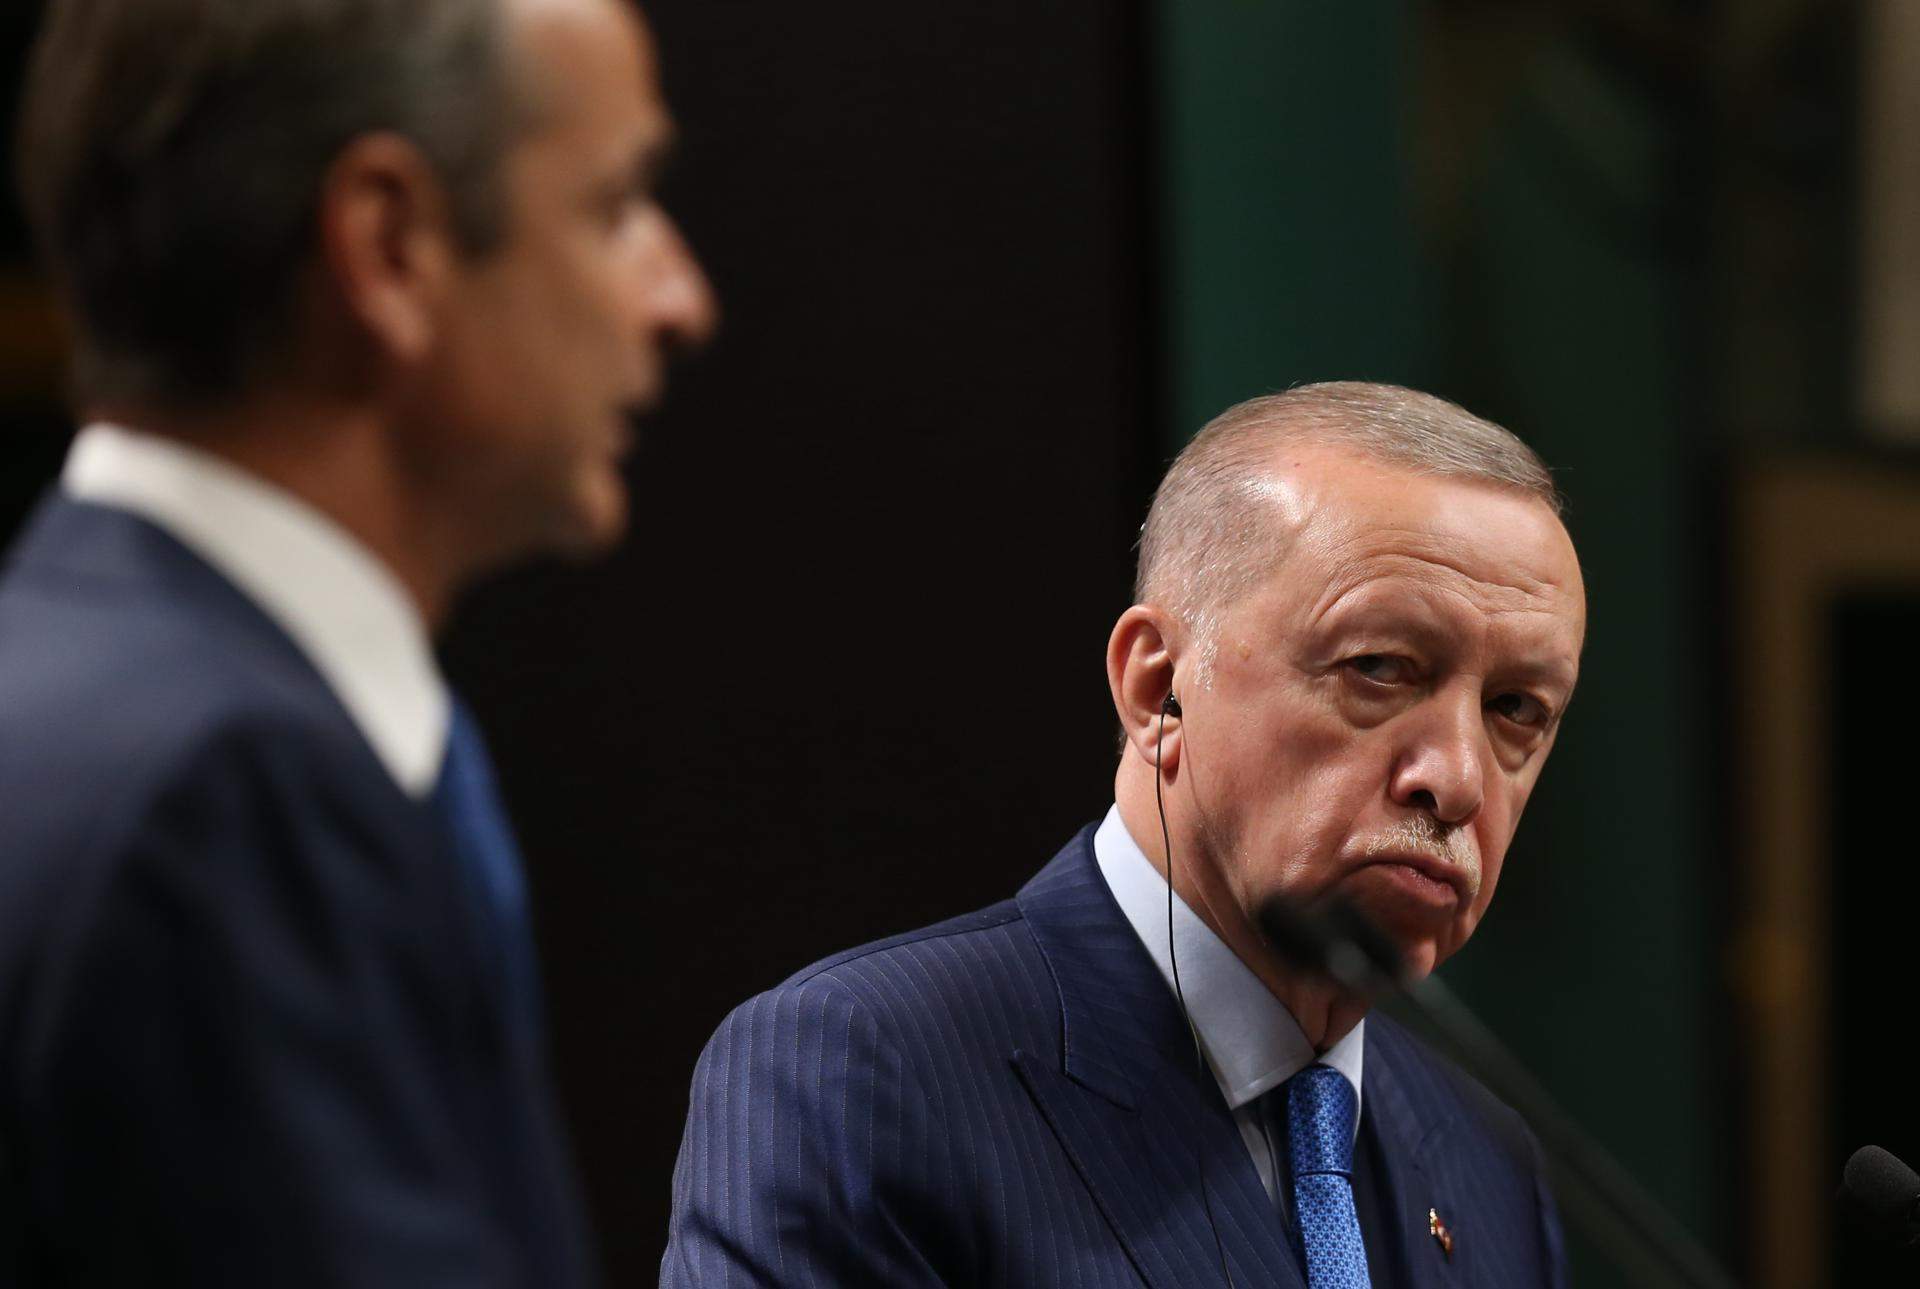 Polémica por las palabras de Erdoğan sobre Eurovisión: "Amenaza a la familia"